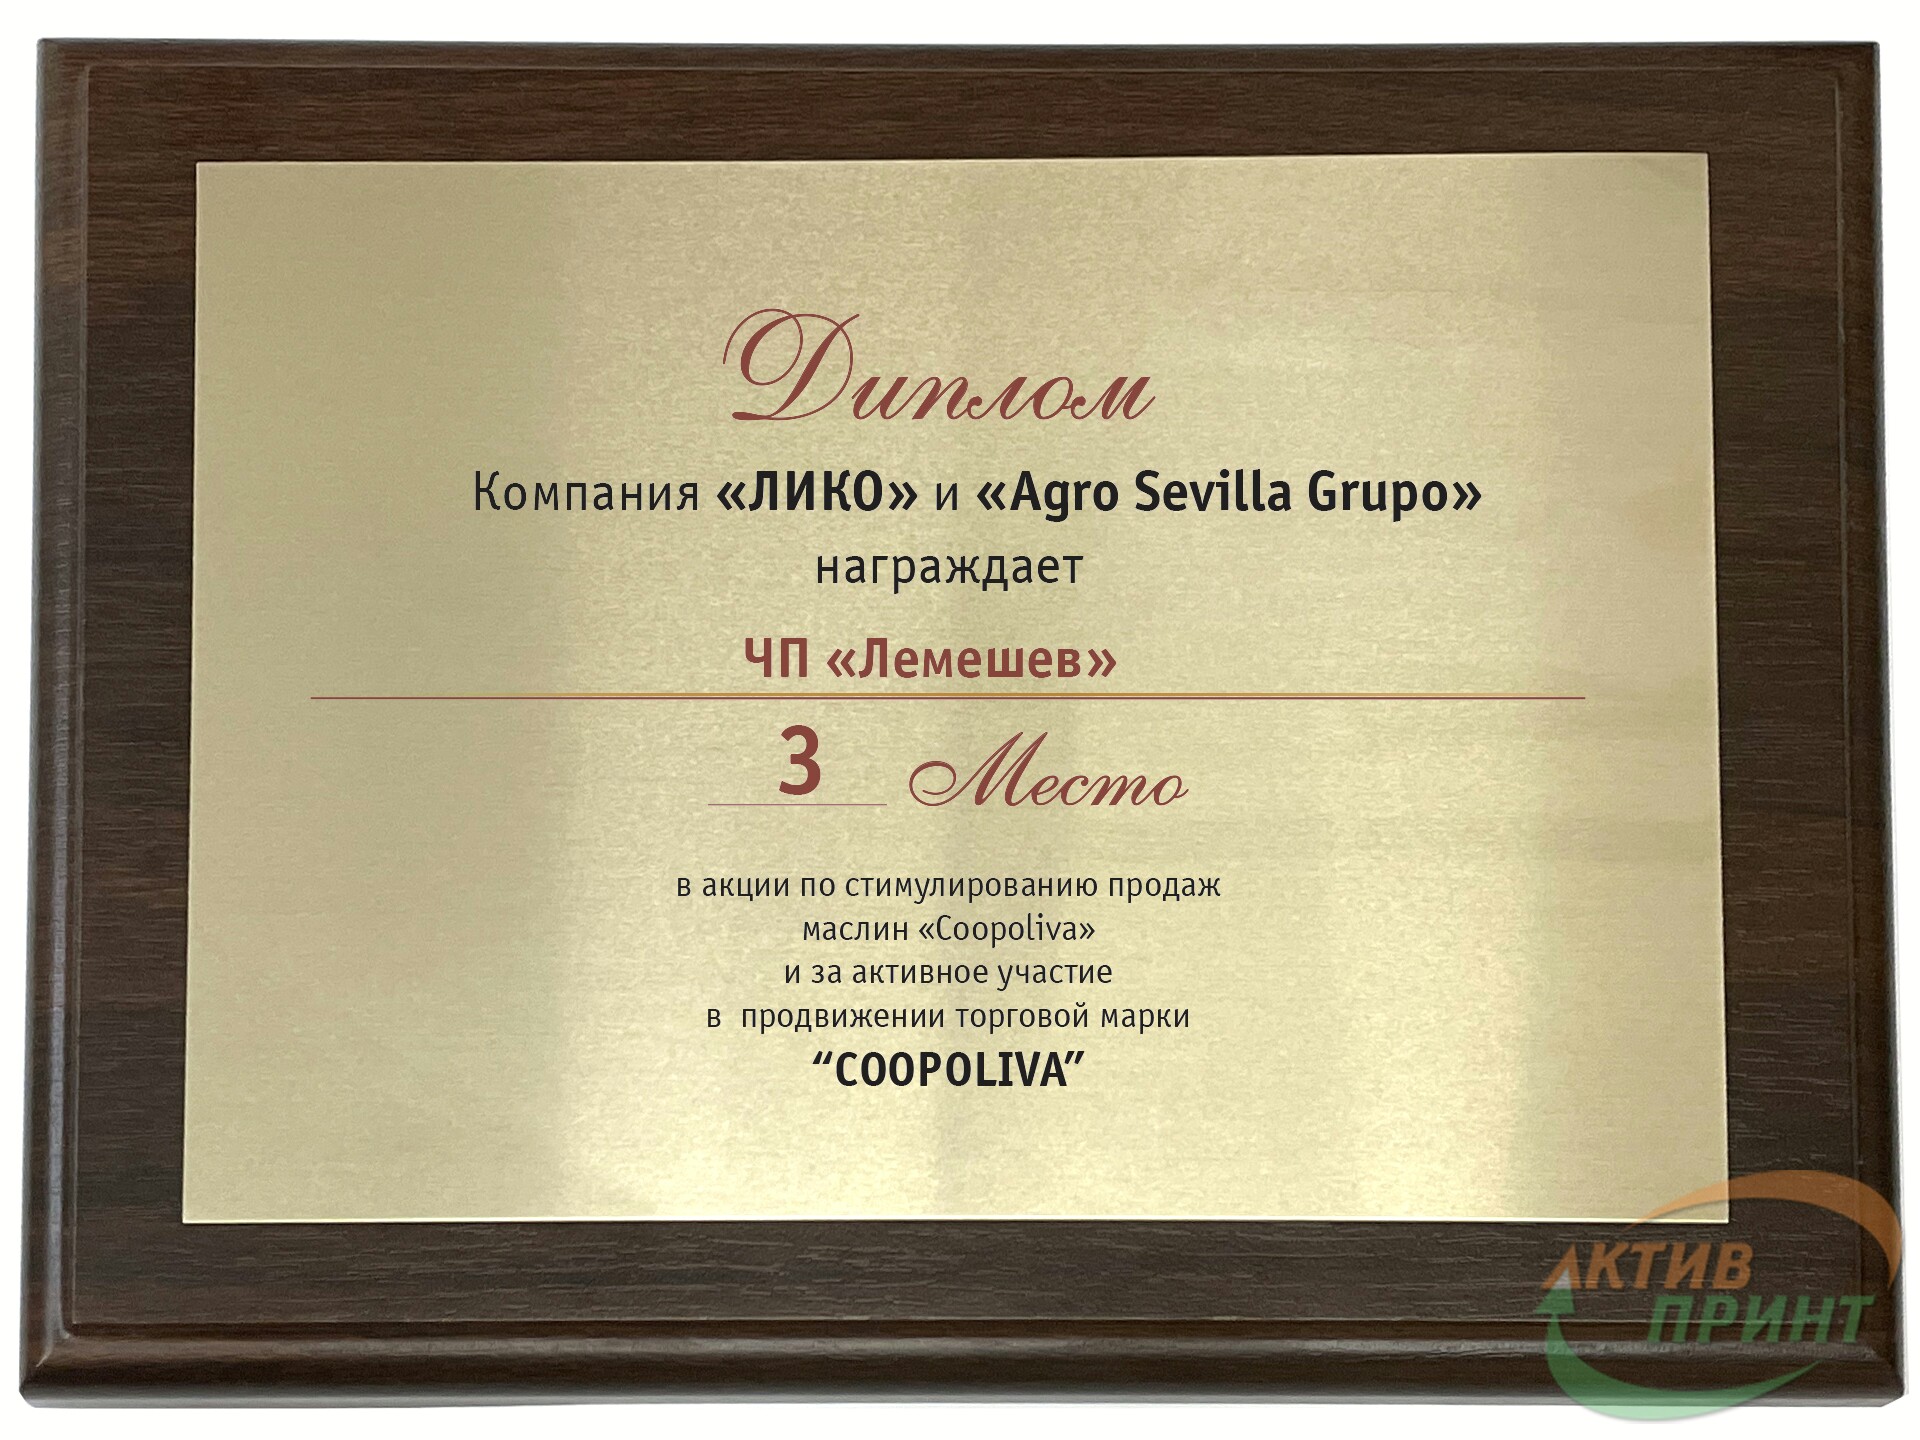 Пример сертификата на металле и деревянной подложке